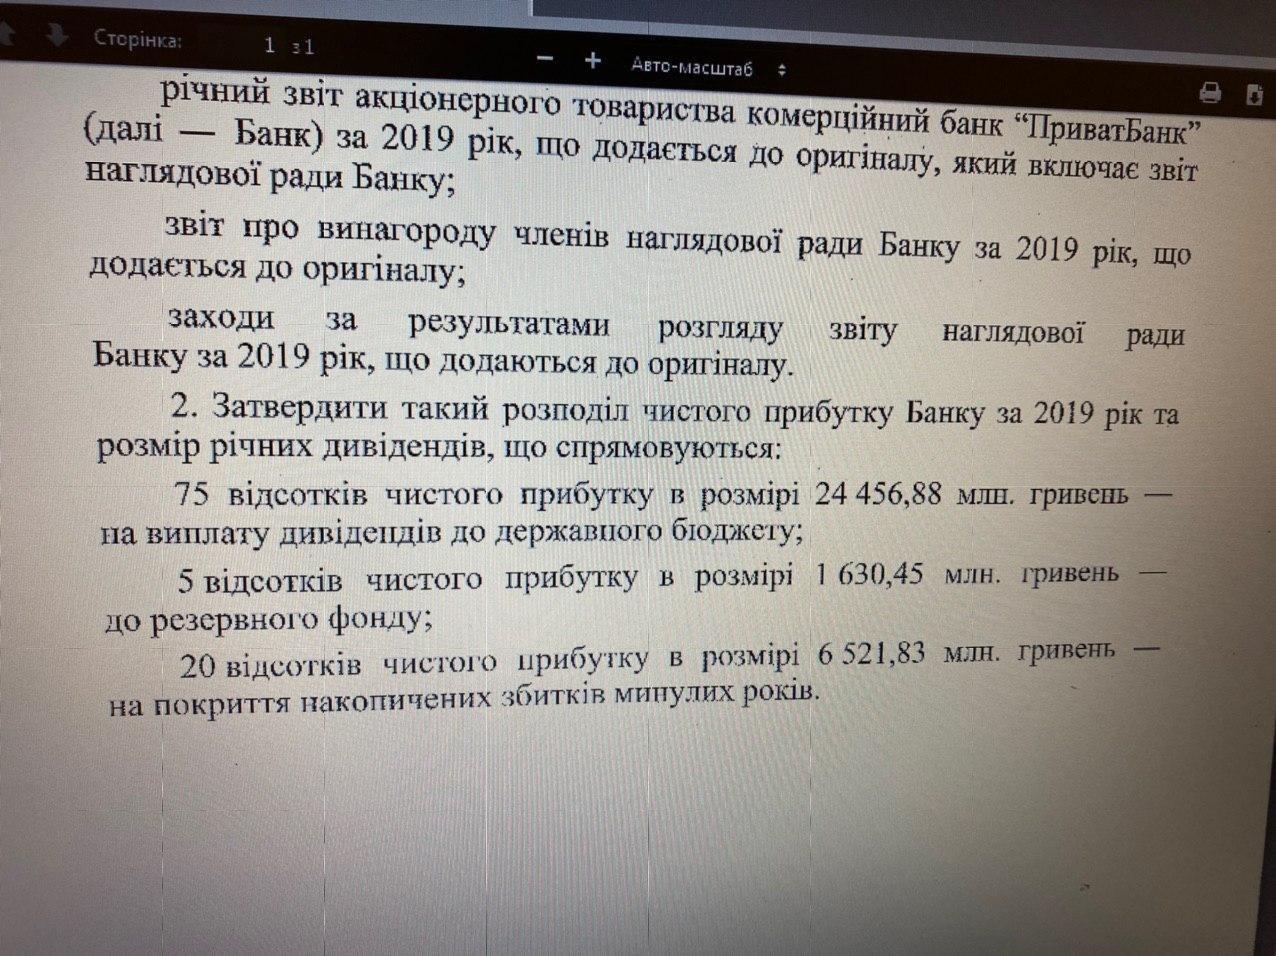 Решение Кабмина о распределении прибыли Приватбанка. Телеграм Гончаренко